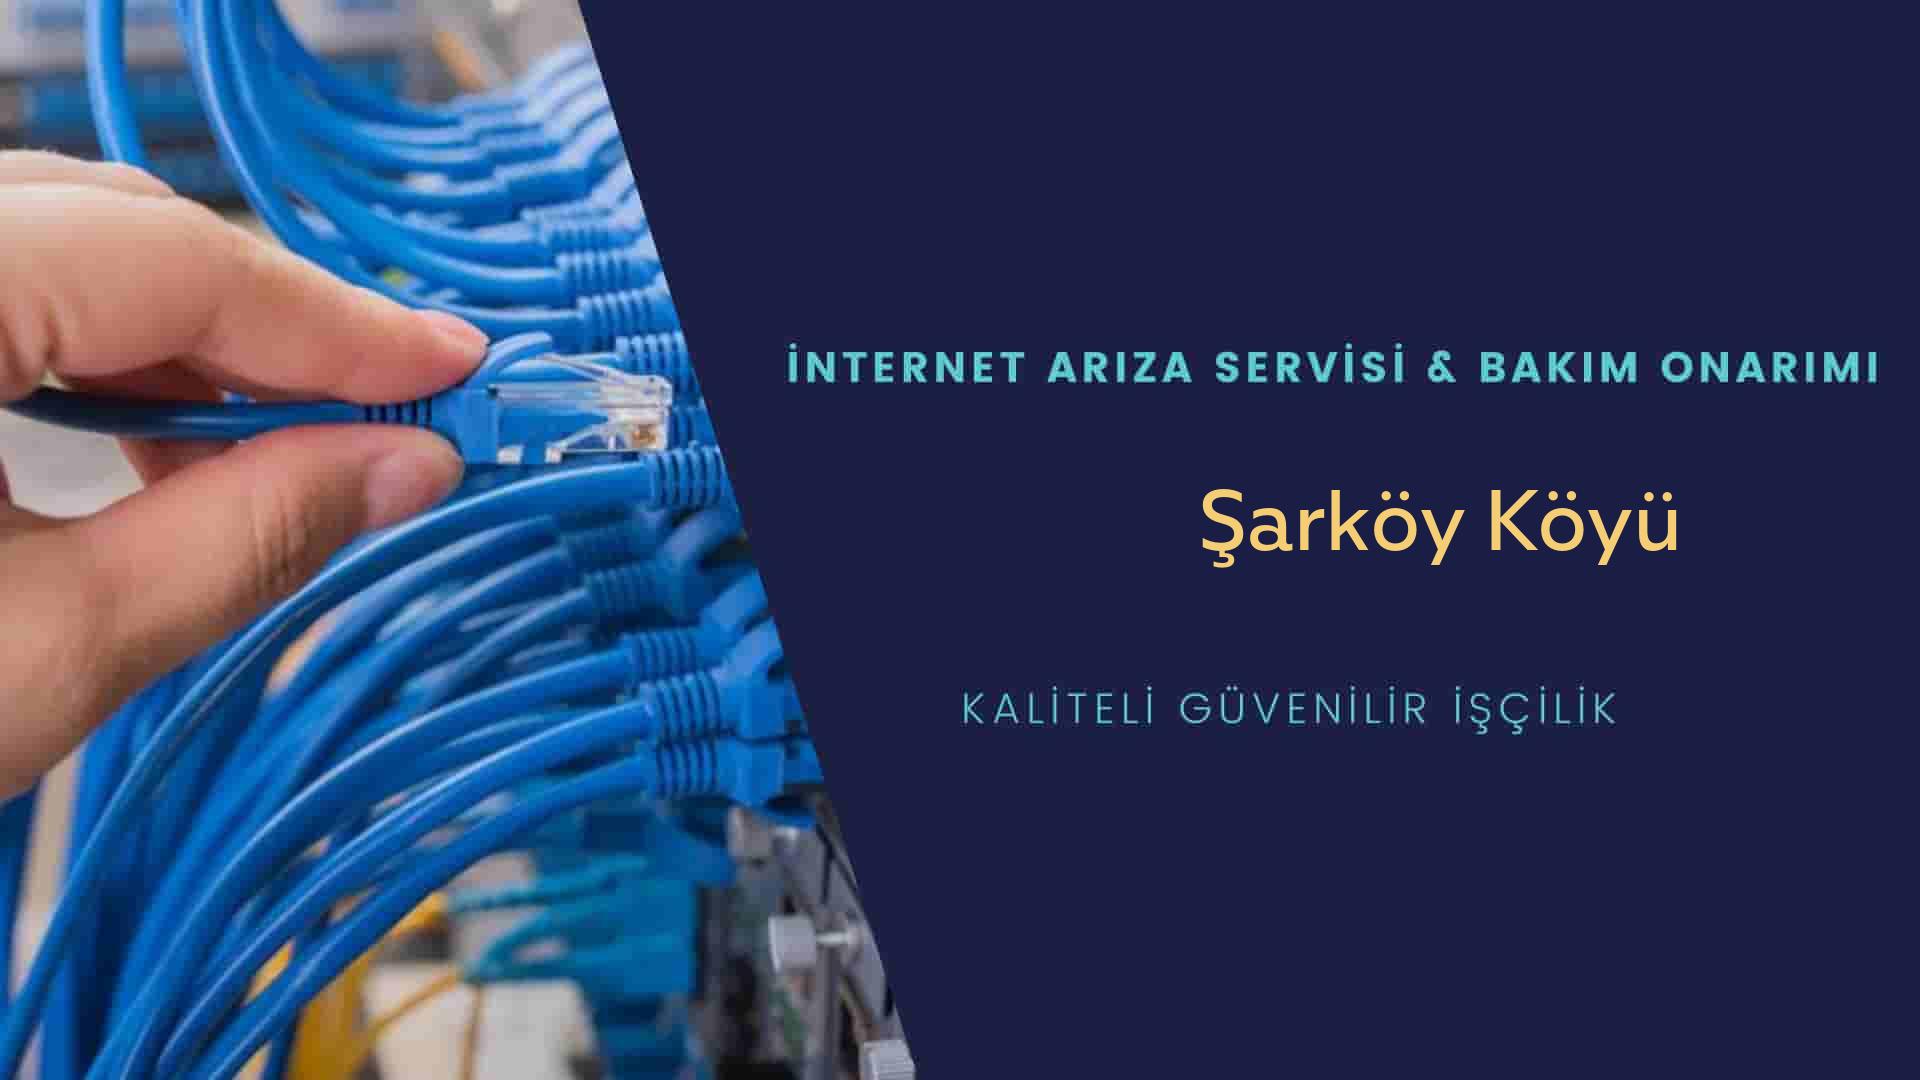 Şarköy Köyü internet kablosu çekimi yapan yerler veya elektrikçiler mi? arıyorsunuz doğru yerdesiniz o zaman sizlere 7/24 yardımcı olacak profesyonel ustalarımız bir telefon kadar yakındır size.